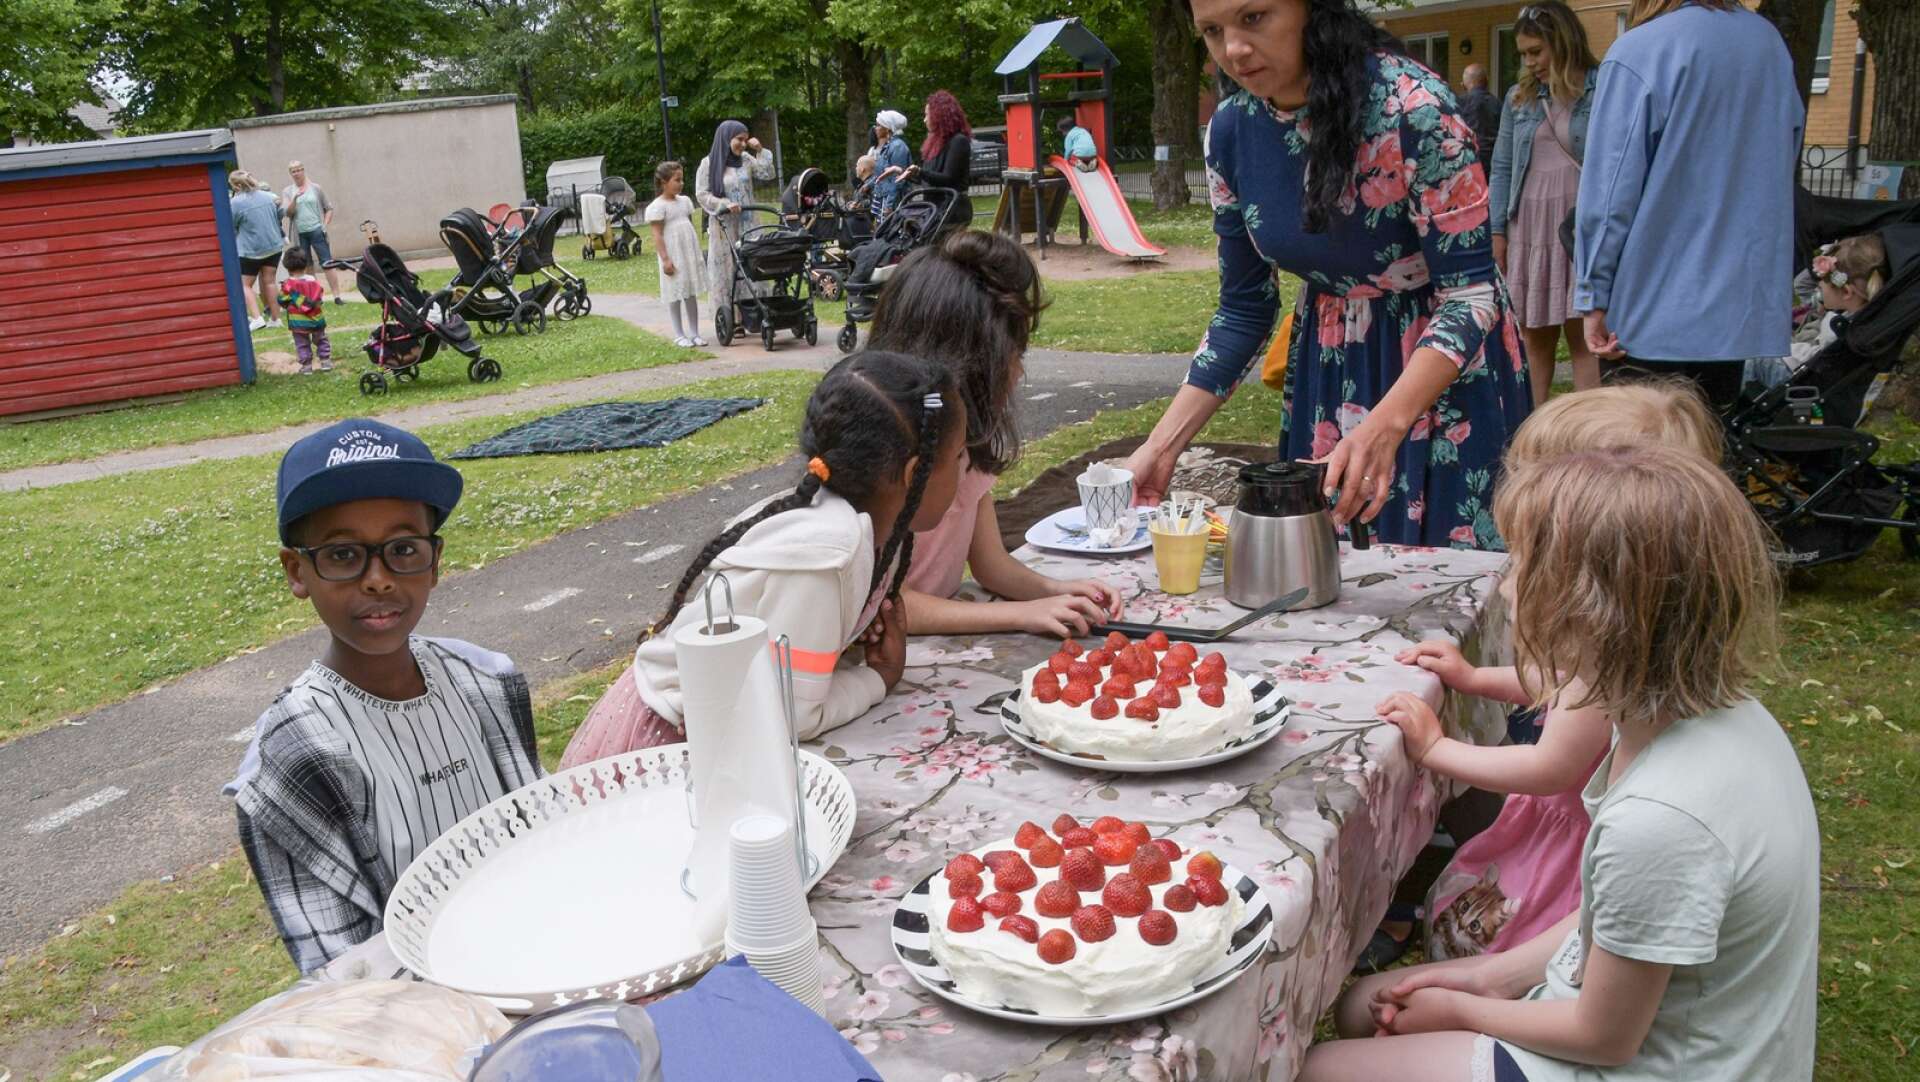 Shureym och de andra barnen håller väluppfostrat tassarna borta från jordgubbstårtan tills Sofia Hovbjer säger ”Varsågoda”. 